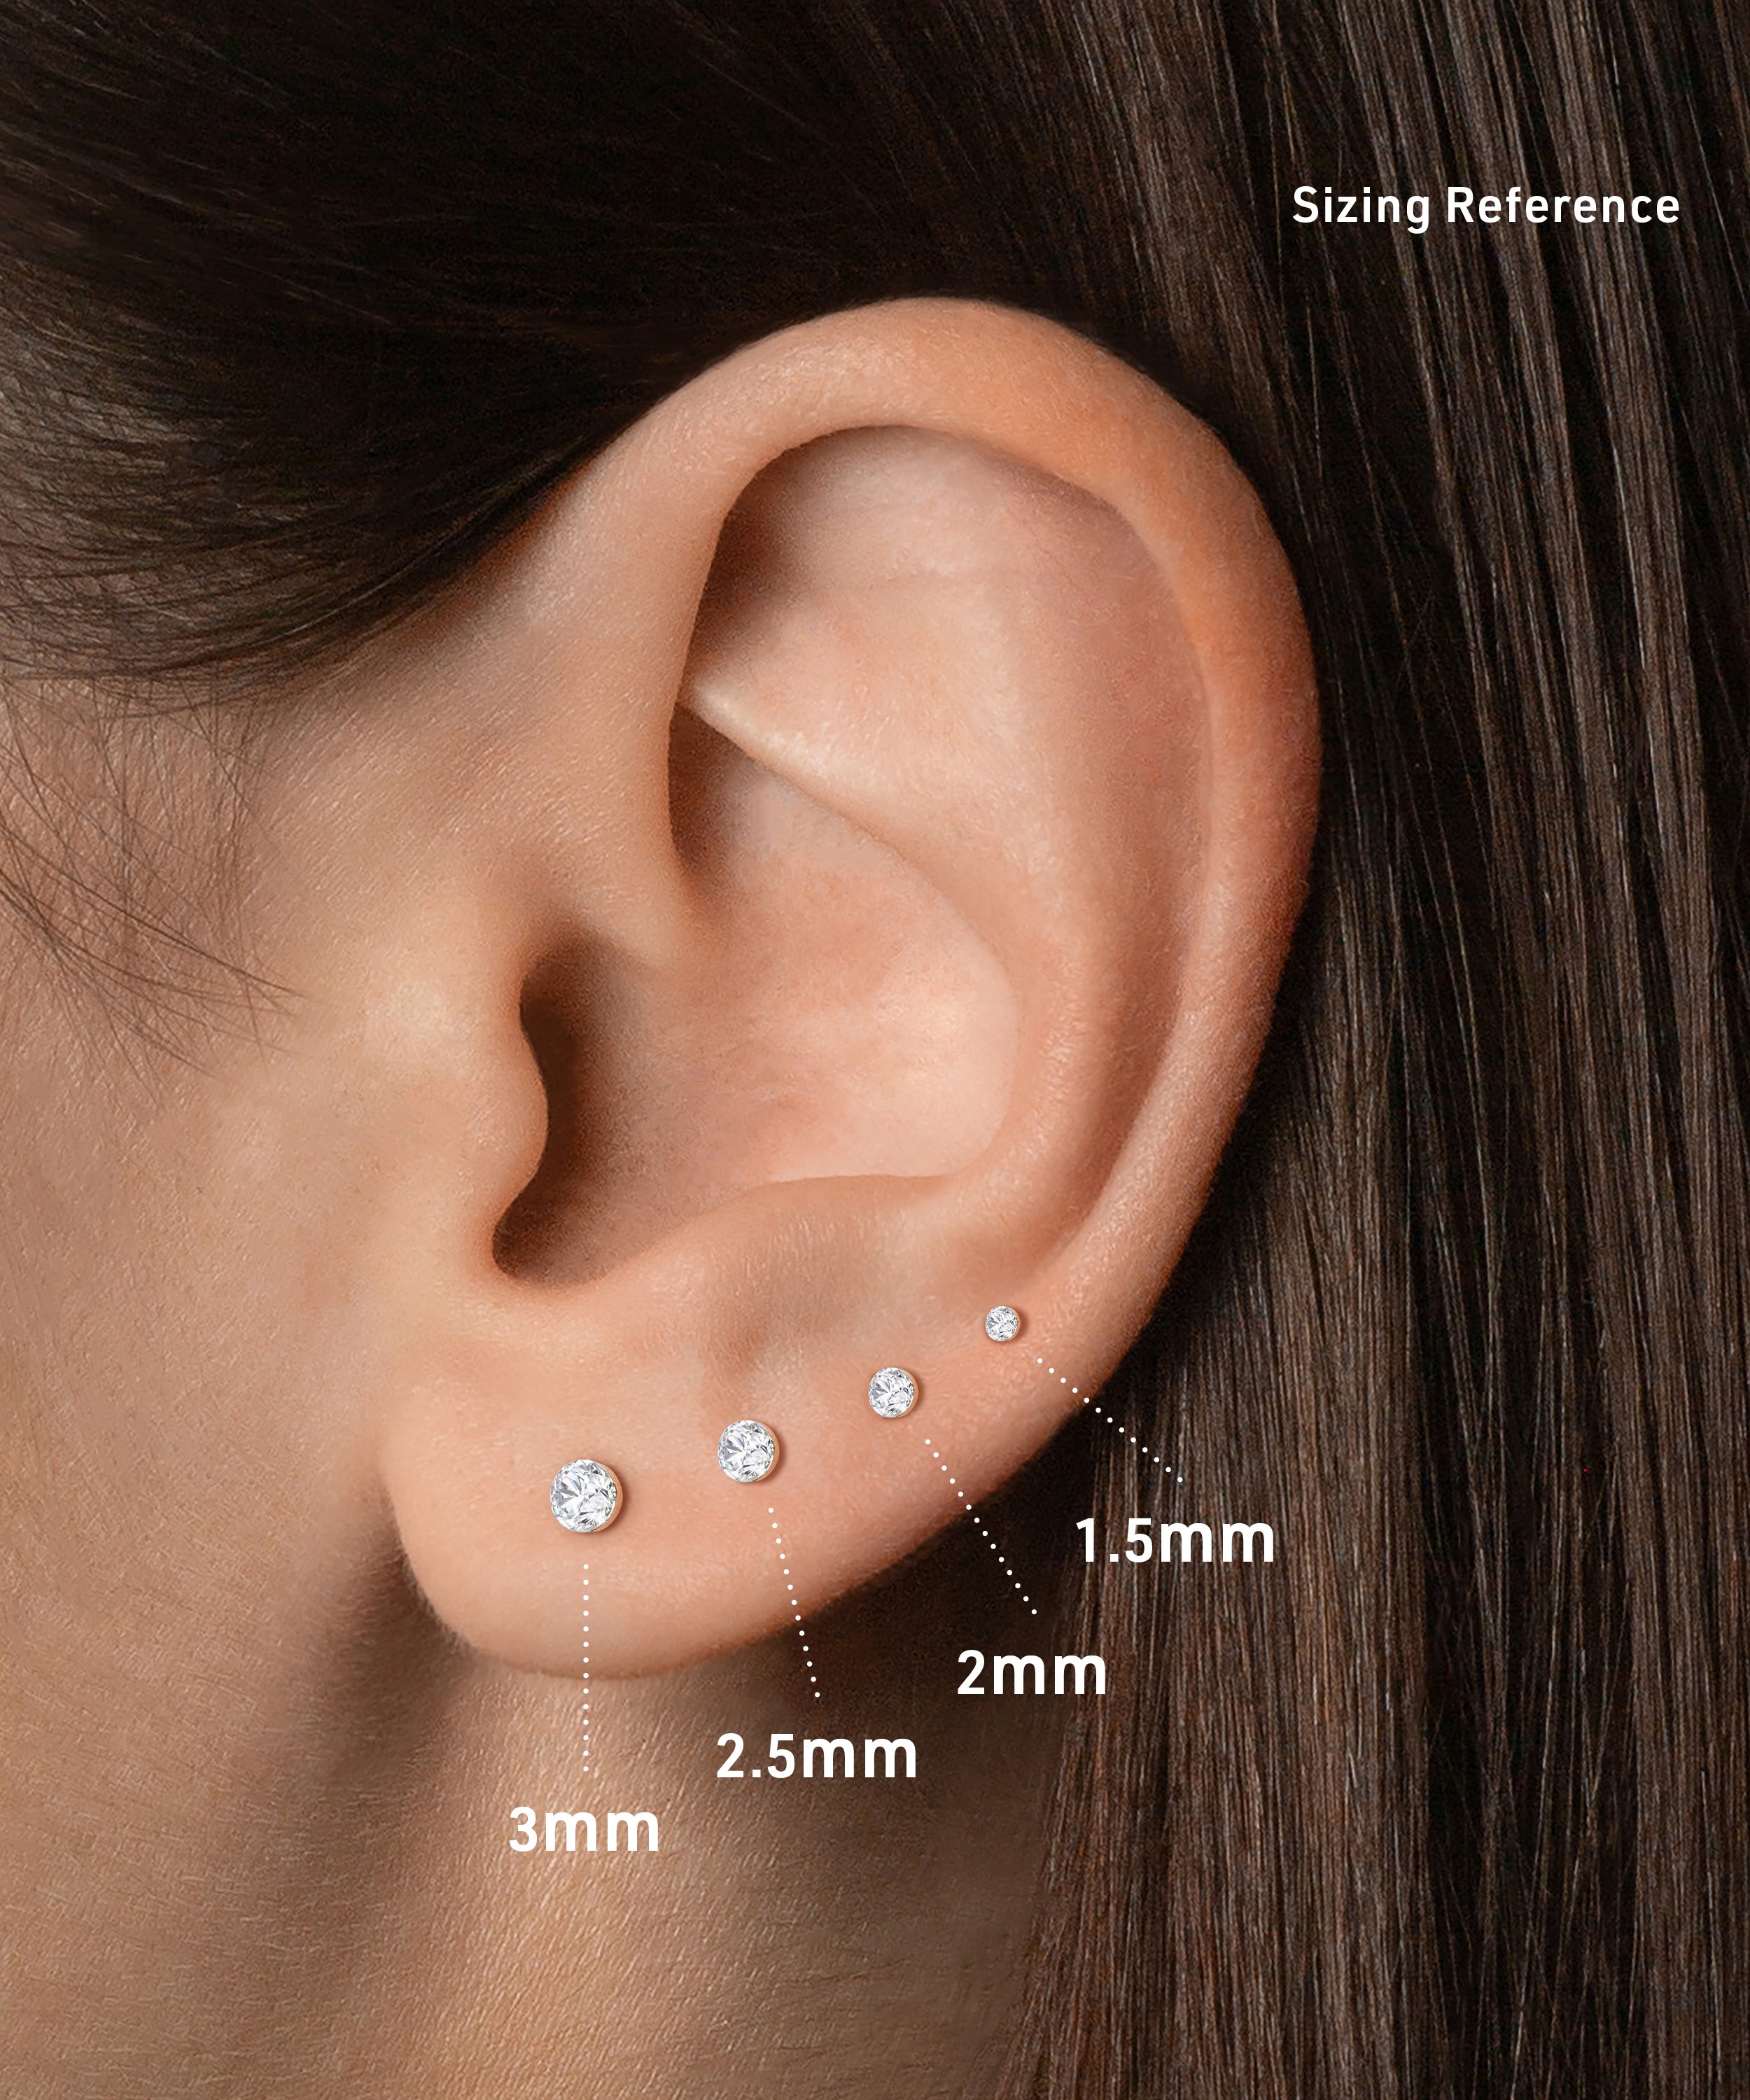 Pinch Flat Back Stud Earring, 3mm Diamond